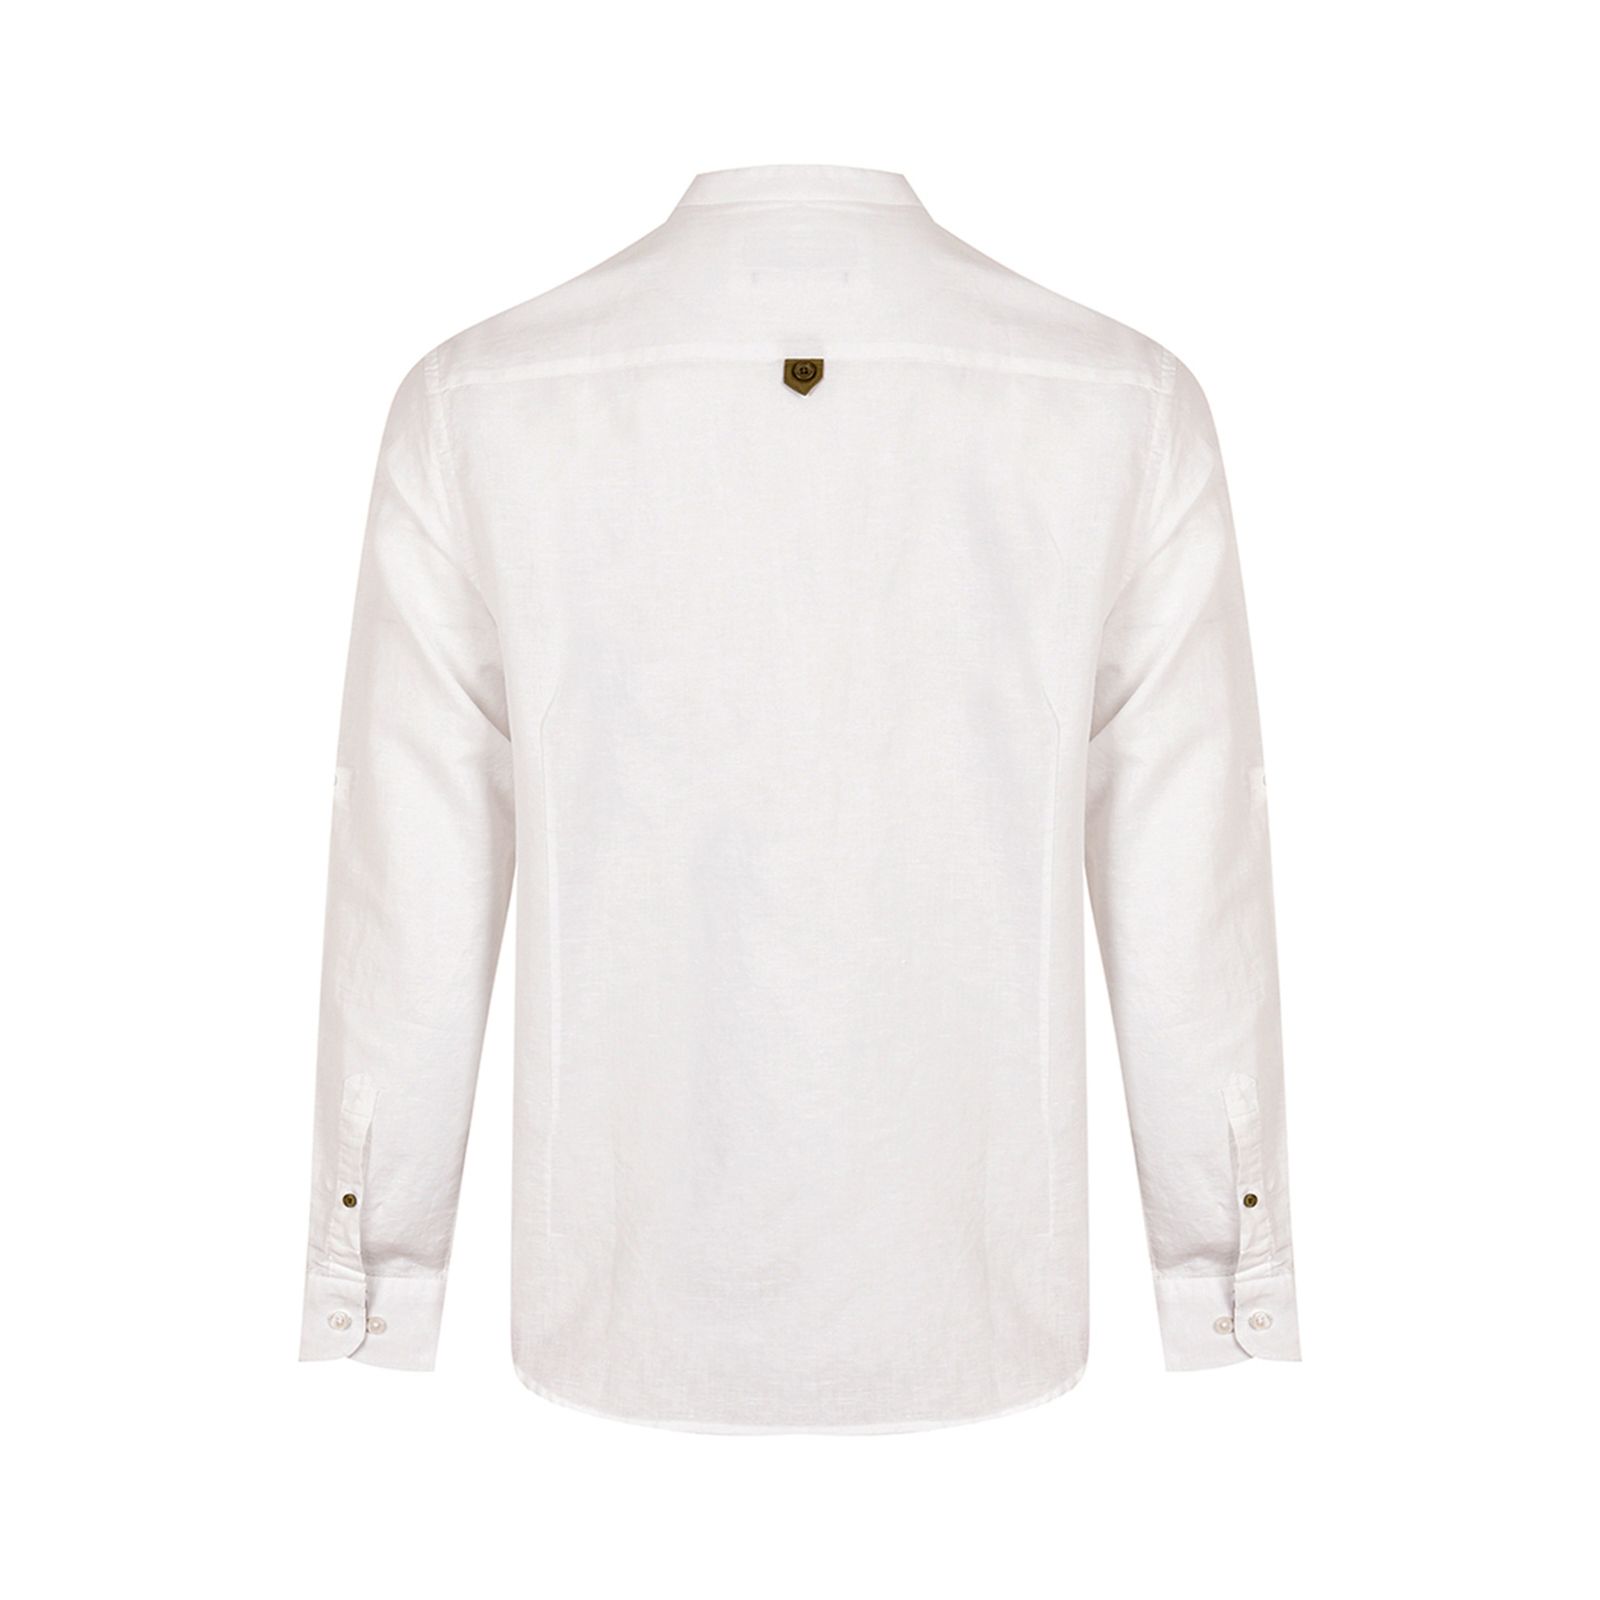 پیراهن آستین بلند مردانه بادی اسپینر مدل 4195 کد 2 رنگ سفید -  - 3